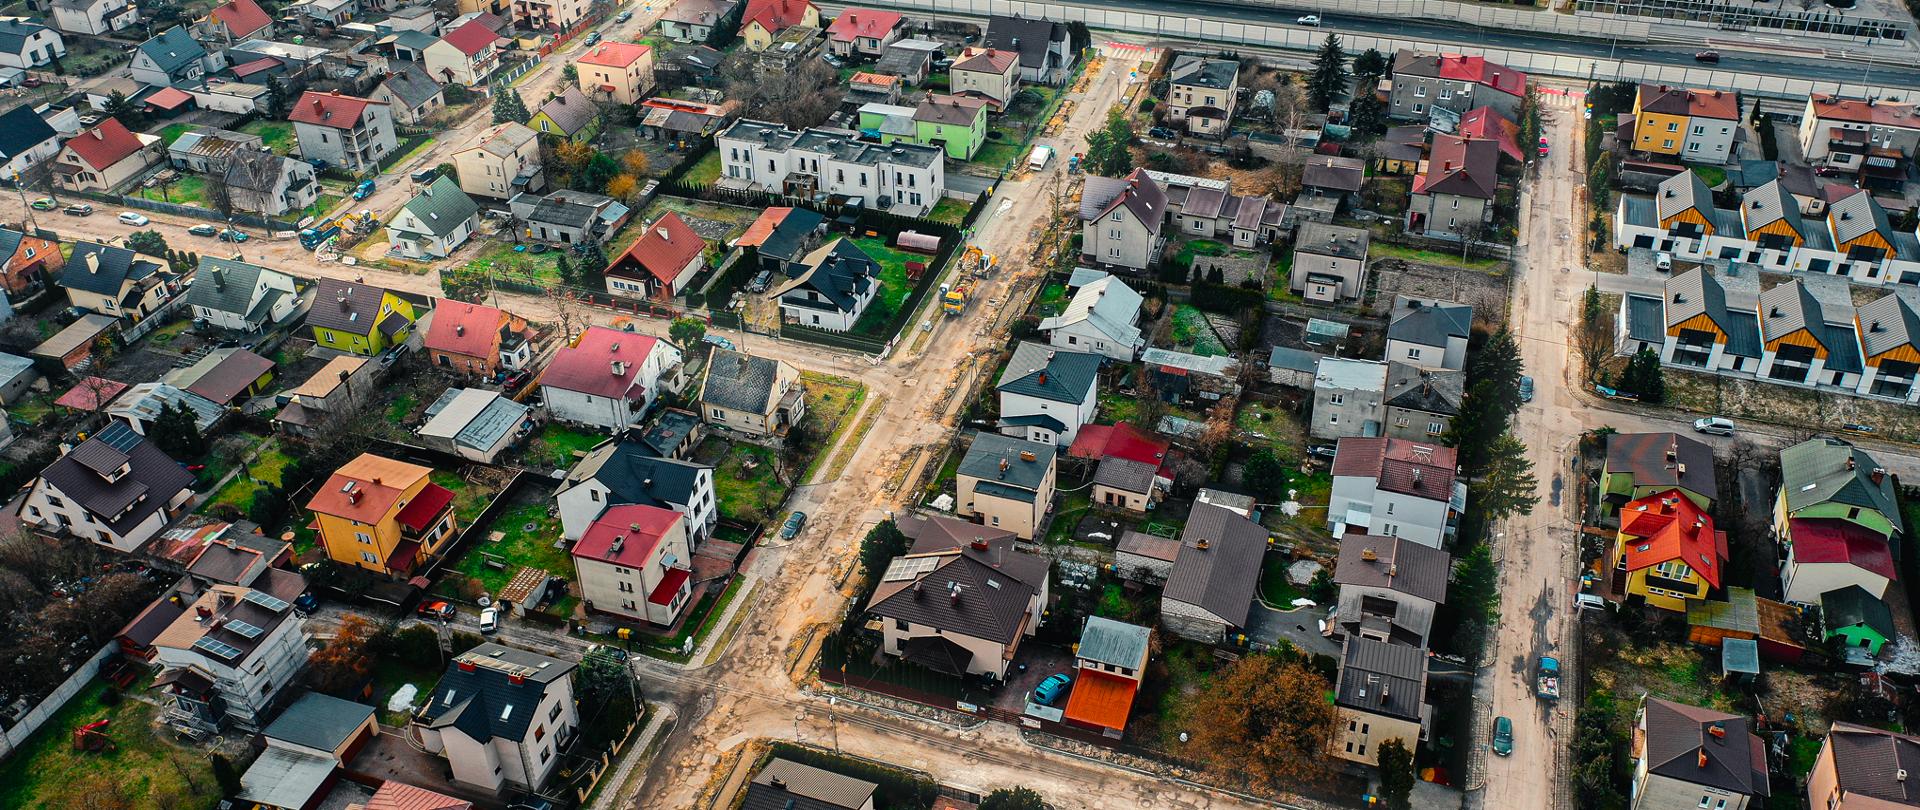 Zdjęcie przedstawia widok z drona na osiedle domków jednorodzinnych, na którym remontowane są drogi